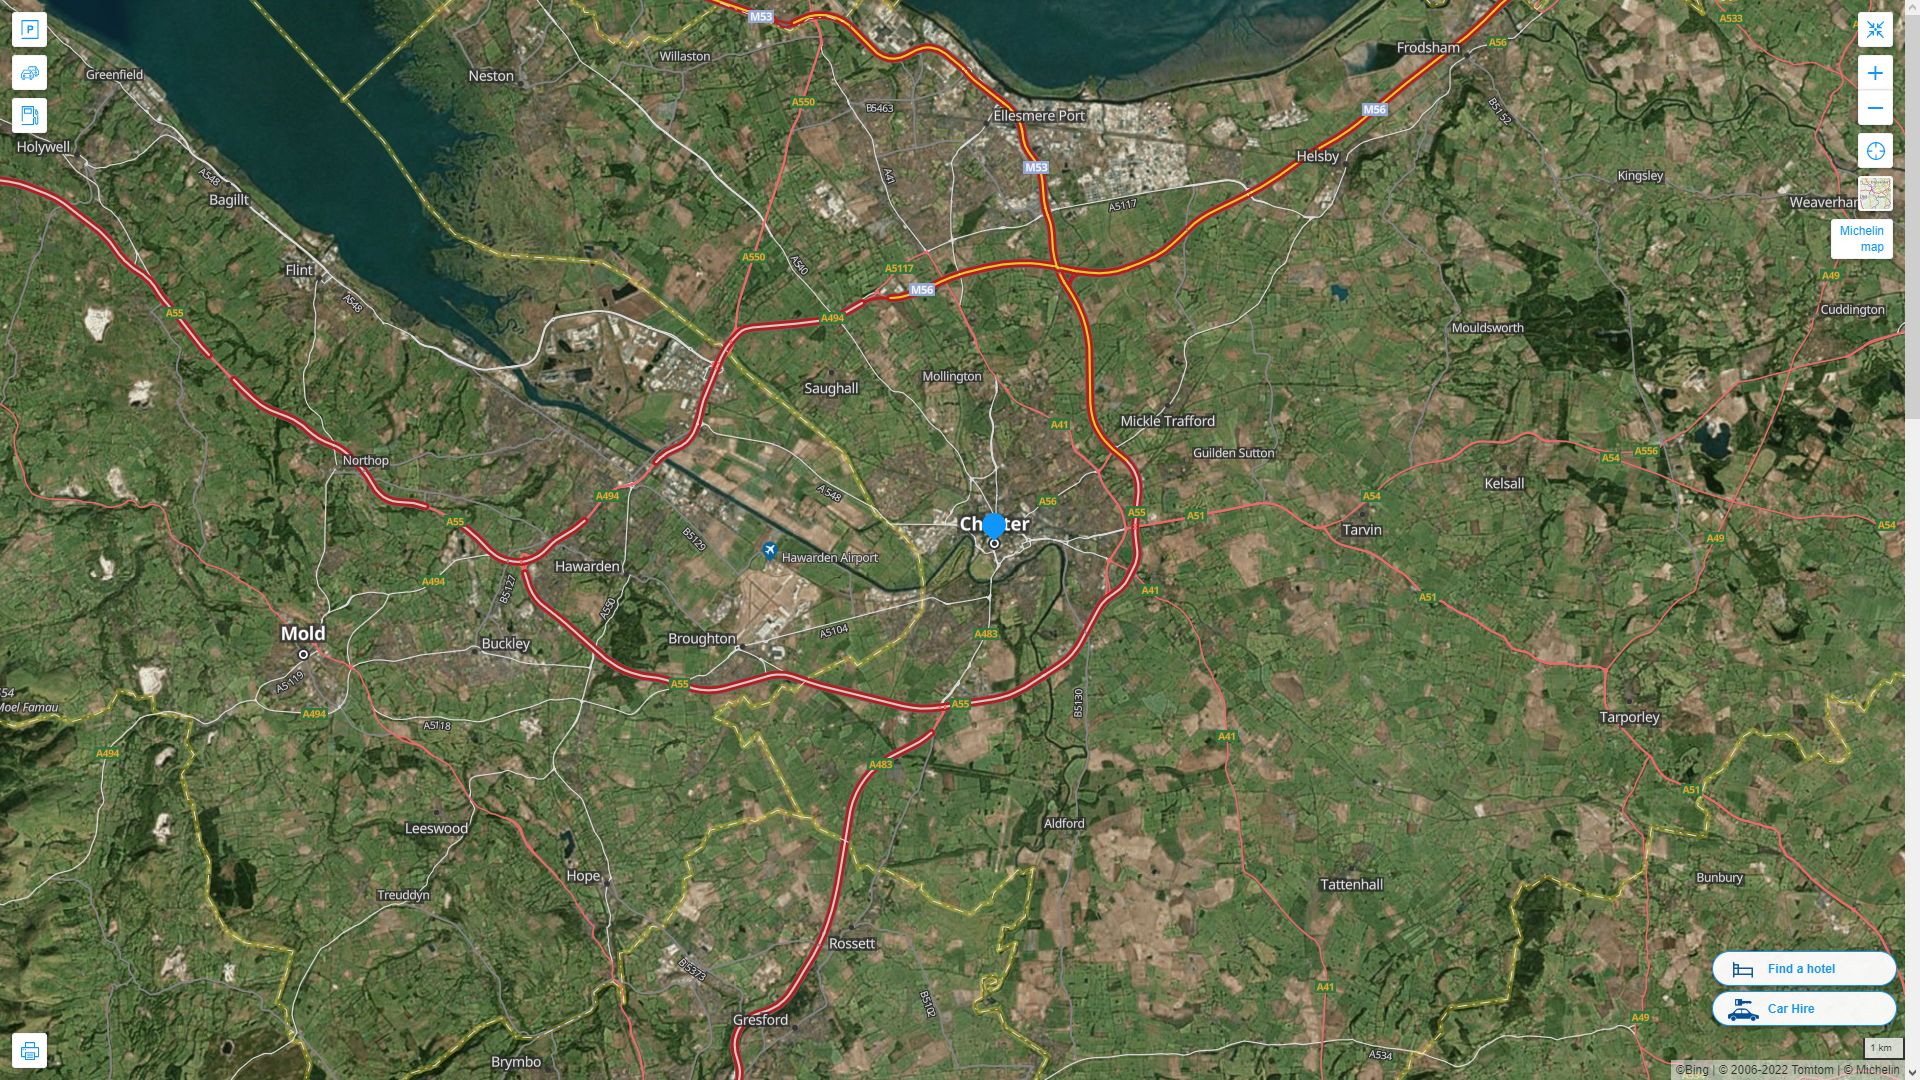 Chester Royaume Uni Autoroute et carte routiere avec vue satellite